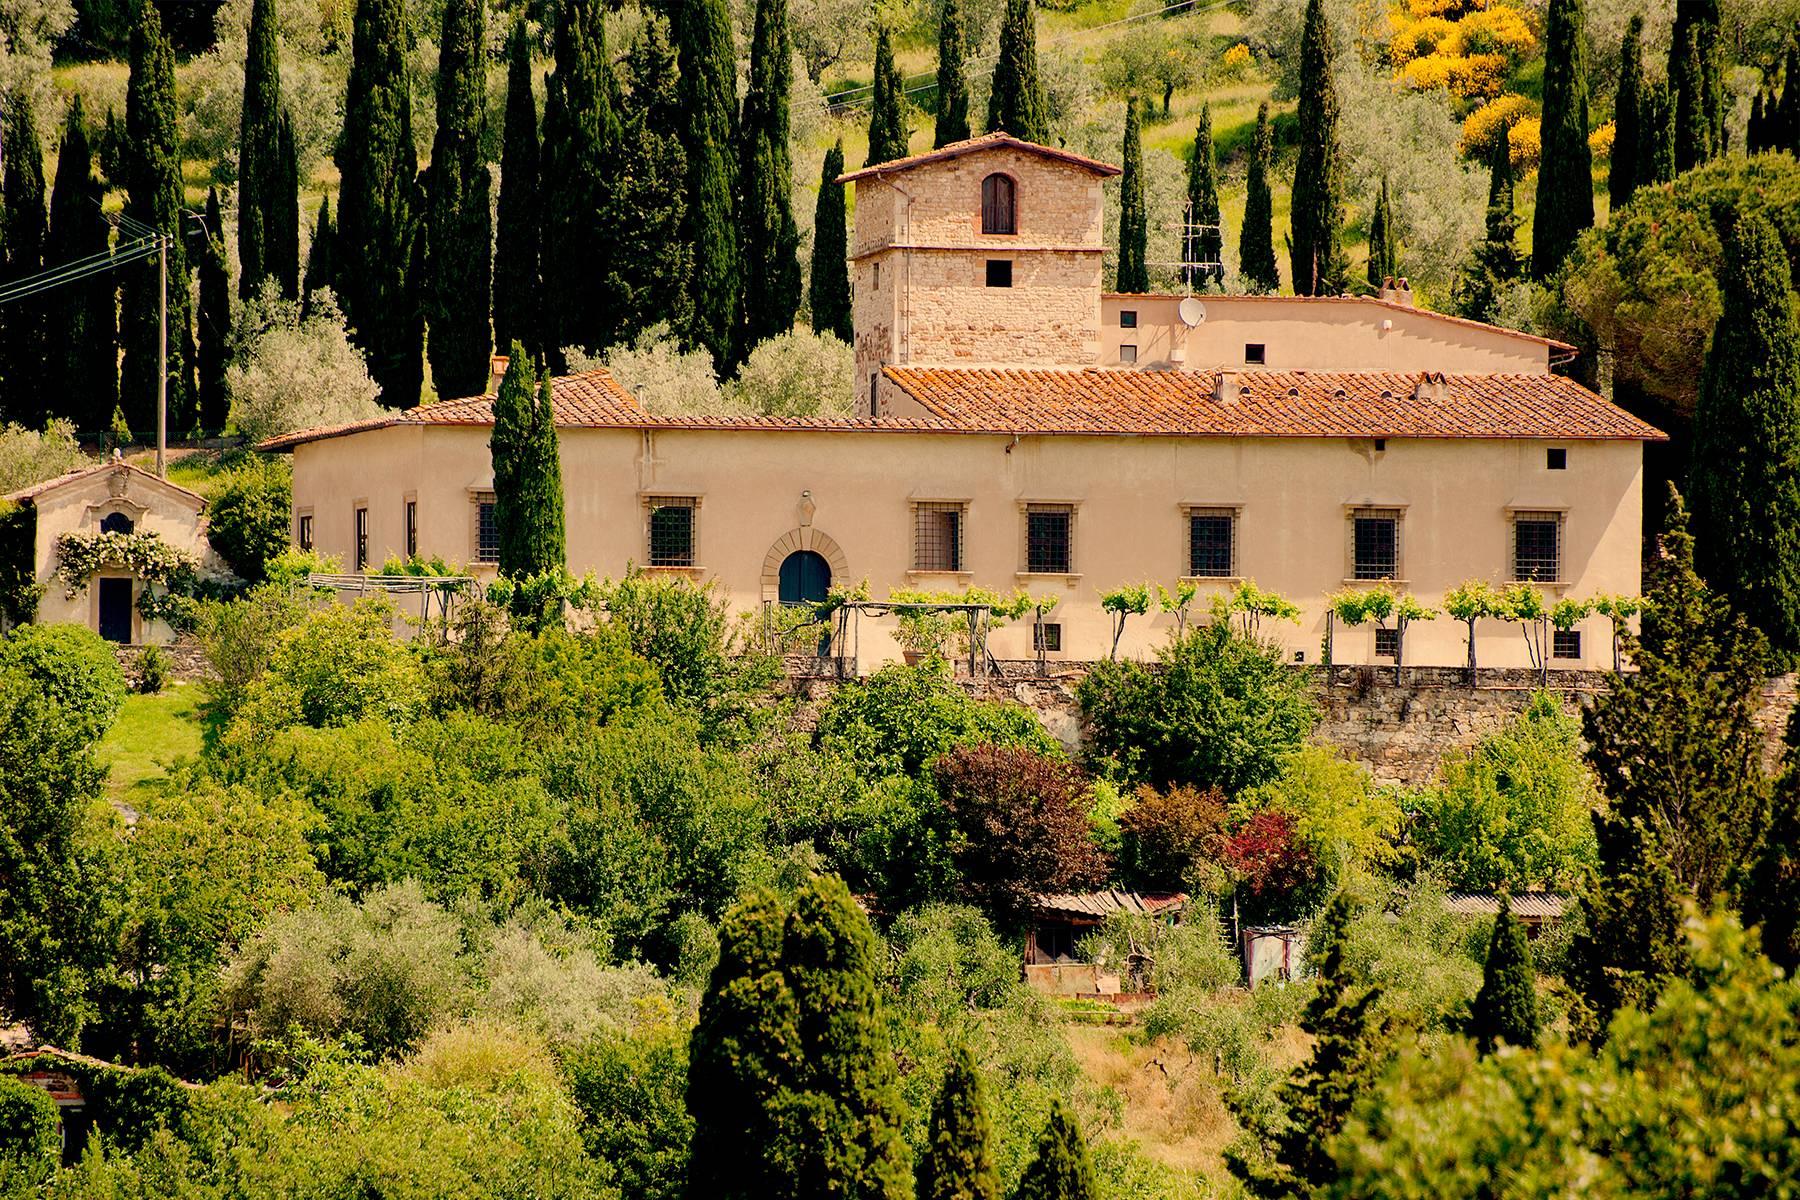 Grande villa padronale d'epoca nella più rinomata zona olearia vicino a Firenze - 6